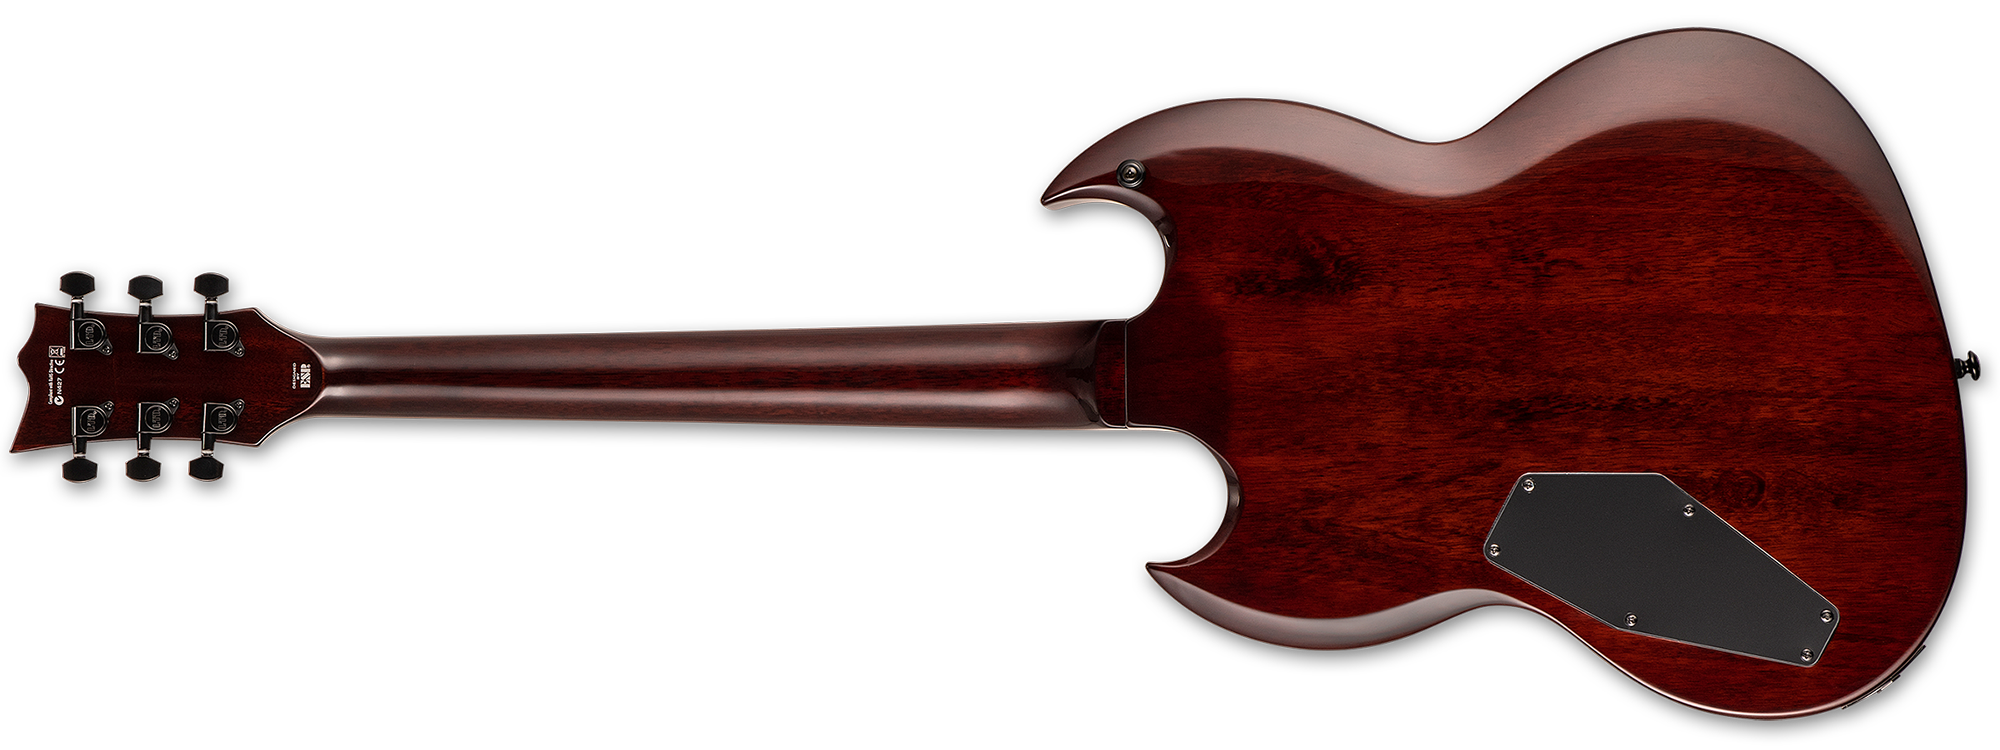 Ltd Viper-256 Hh Ht Jat - Dark Brown Sunburst - Guitare Électrique Double Cut - Variation 2